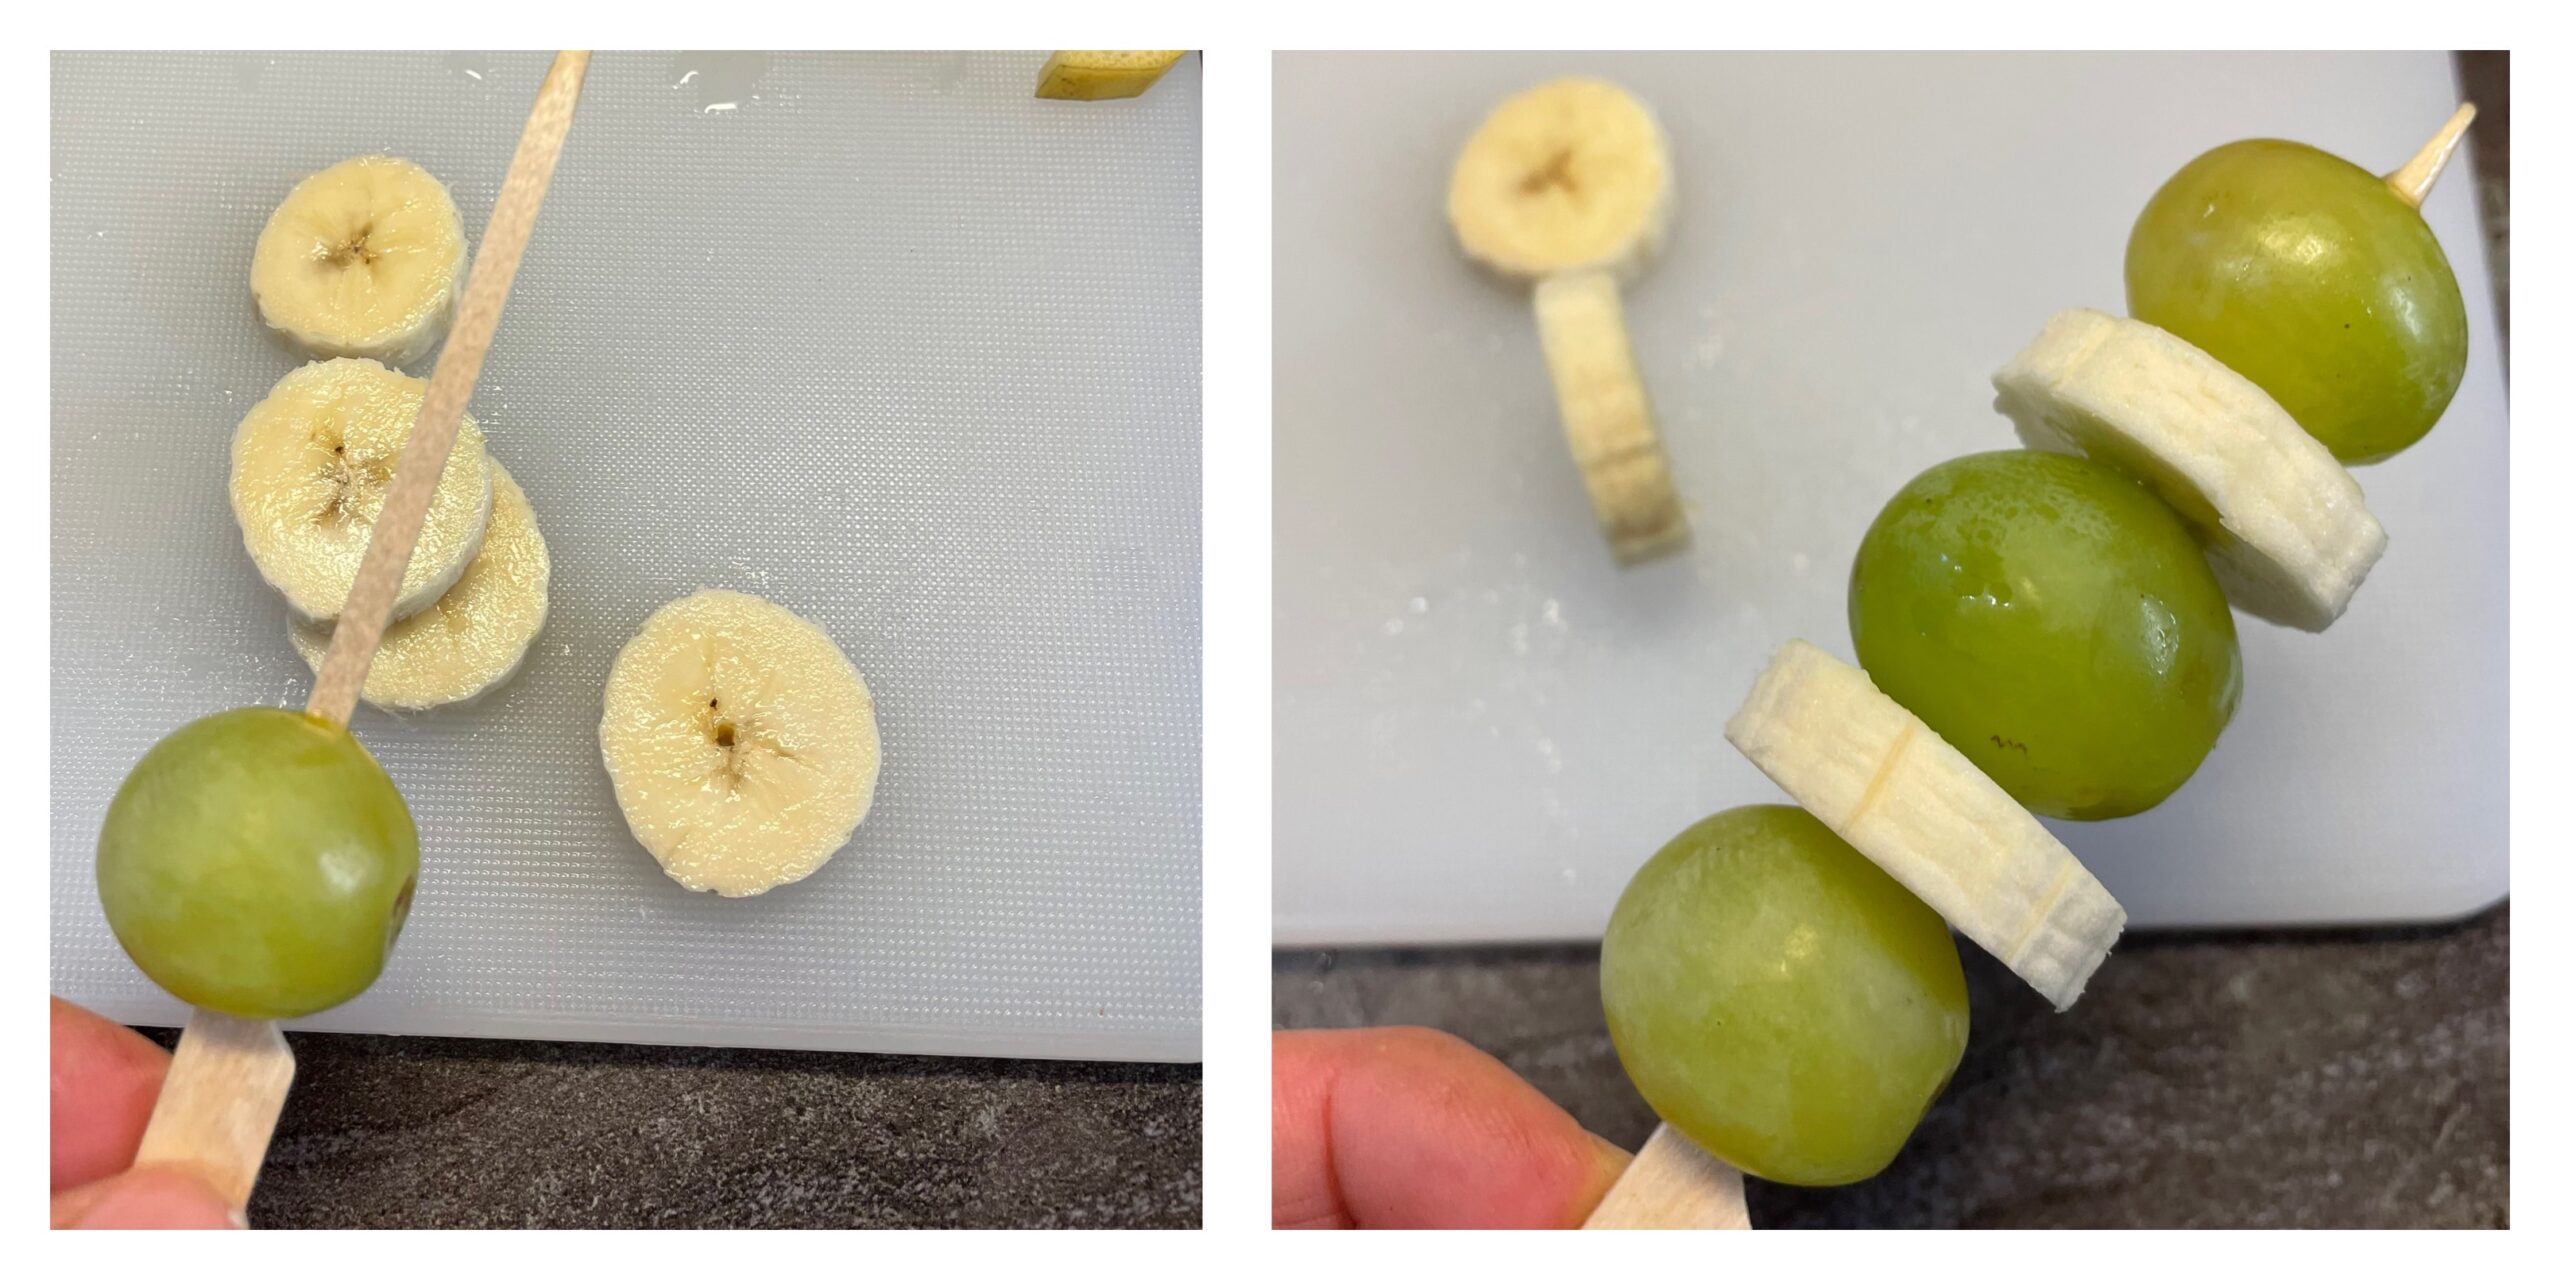 Bild zum Schritt 4 für die Kinder-Beschäftigung: 'Auf einen Fingerfood-Spieß steckt ihr nun abwechselnd Trauben und Bananenscheiben...'